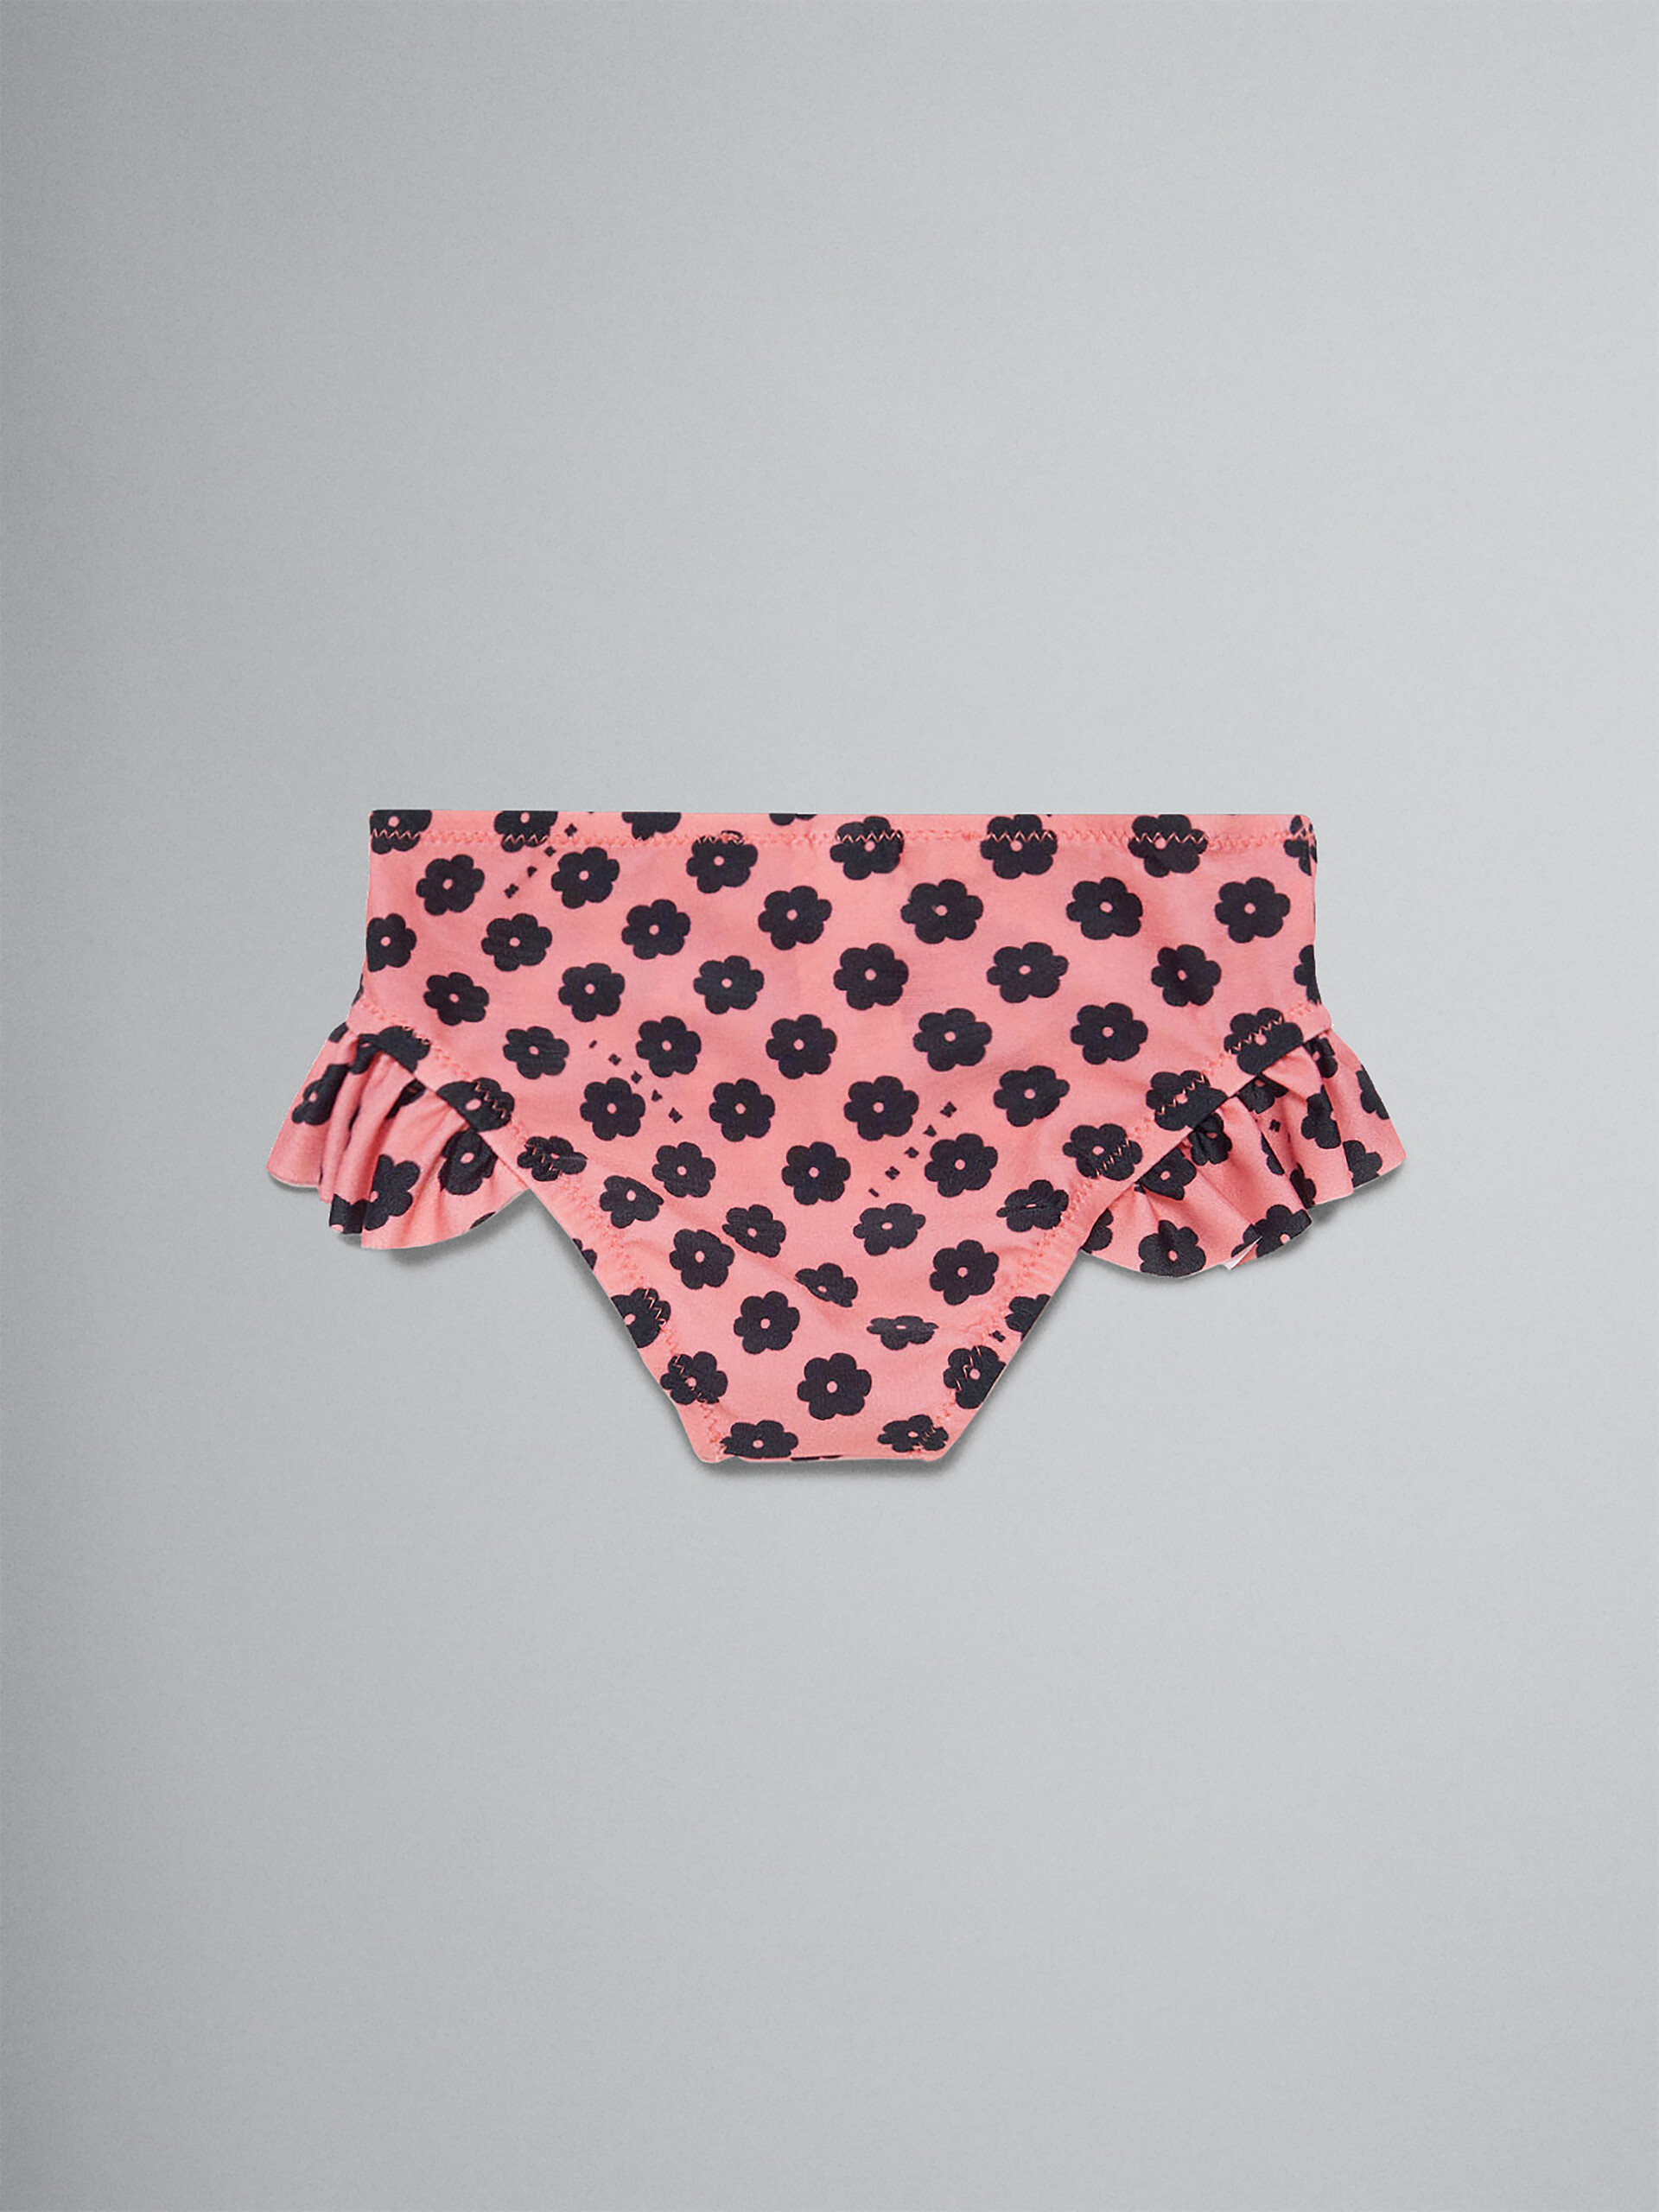 Bas de bikini rose à motif floral - Maillots de bain - Image 2